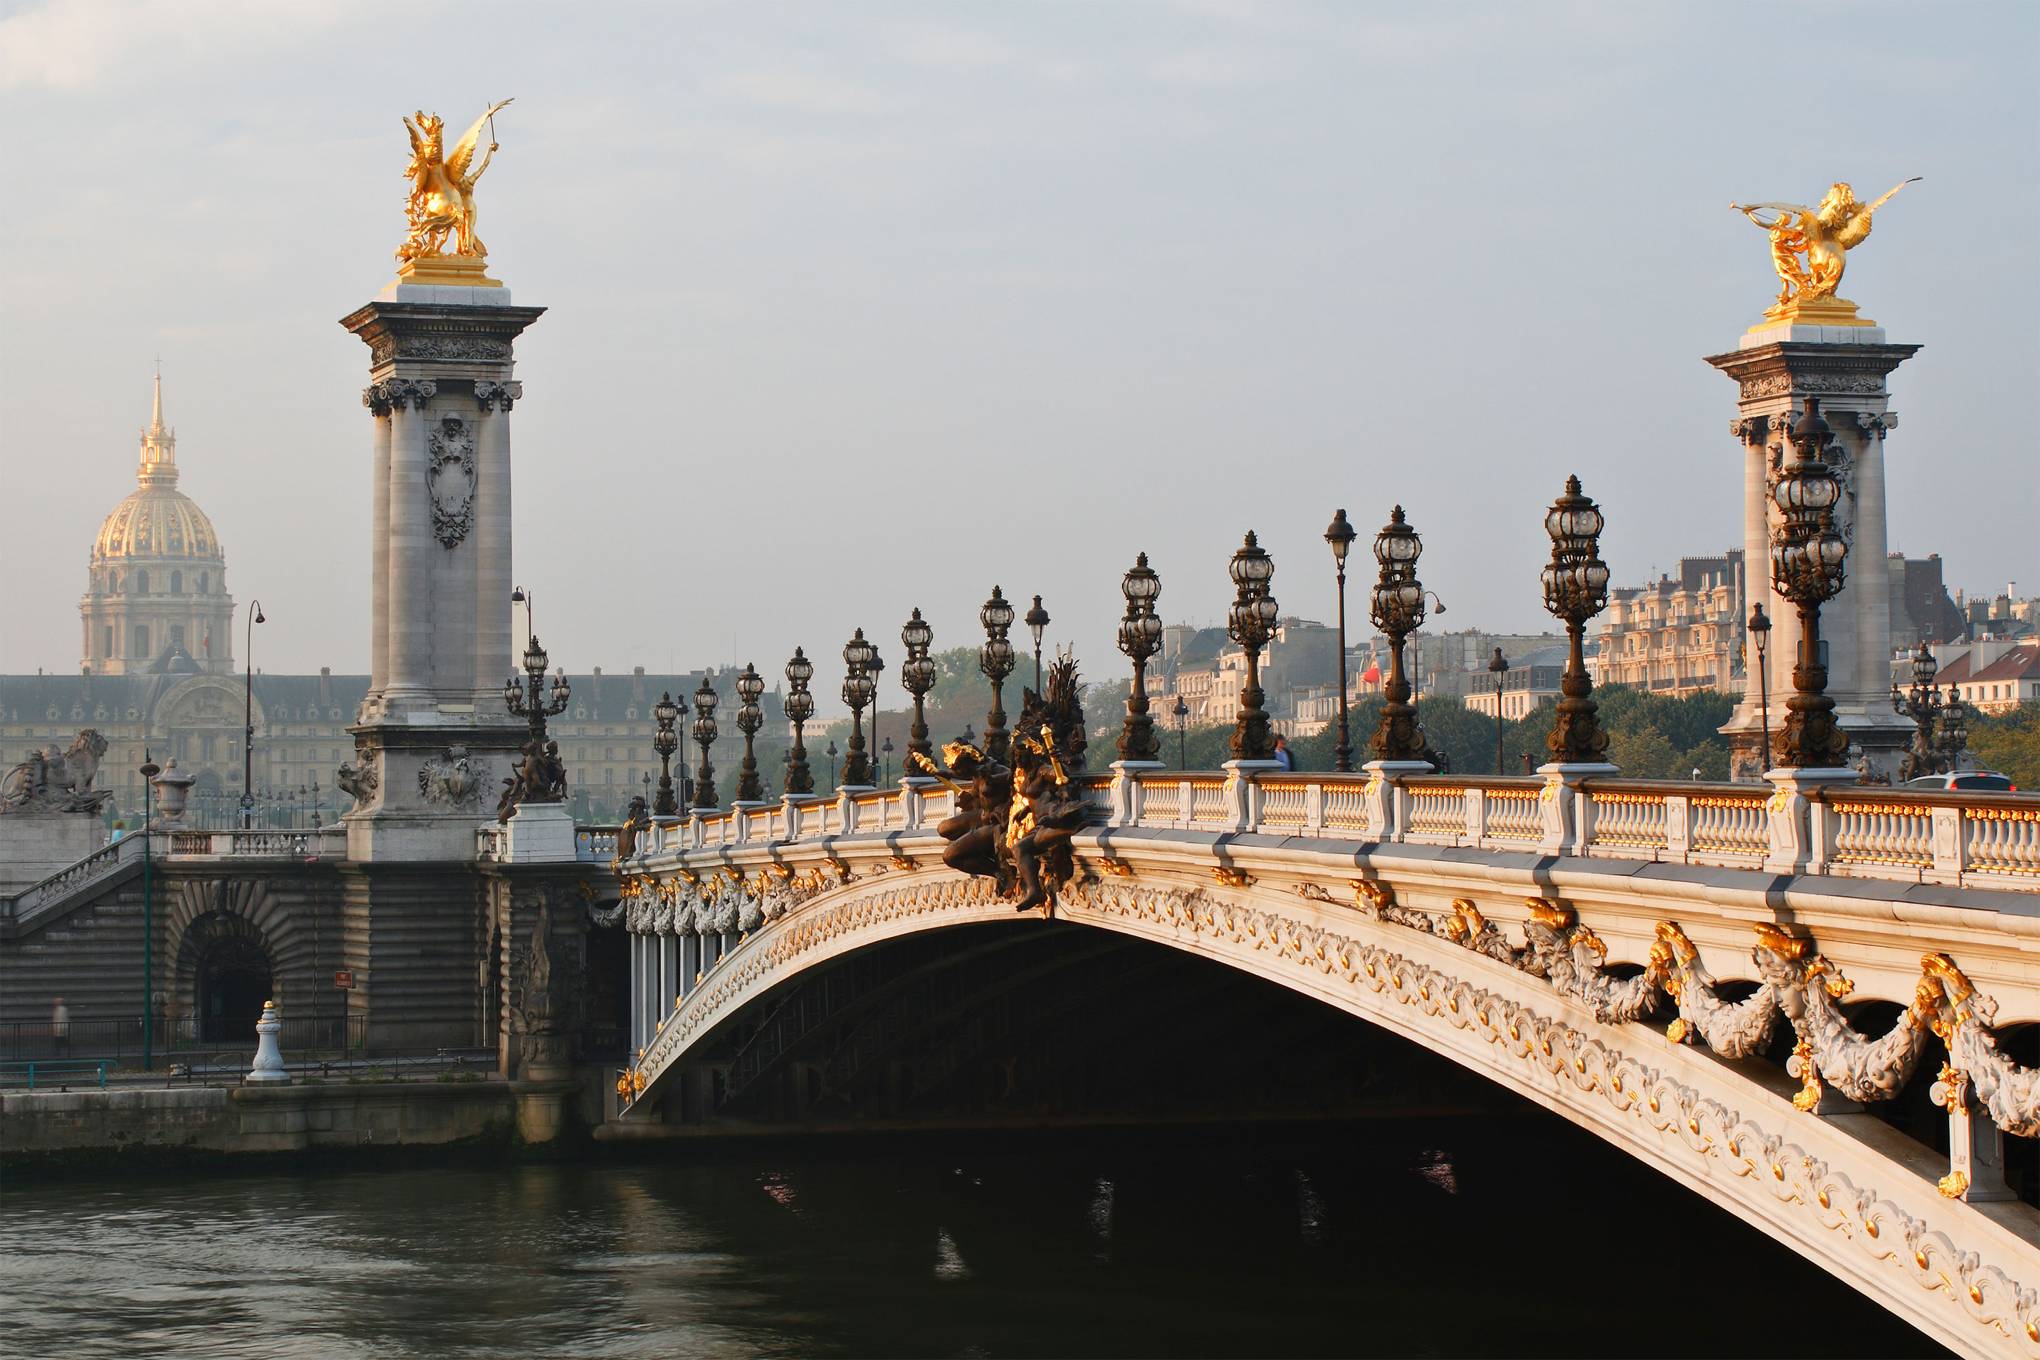 See the Paris of 'Emily in Paris' • Paris je t'aime - Tourist office